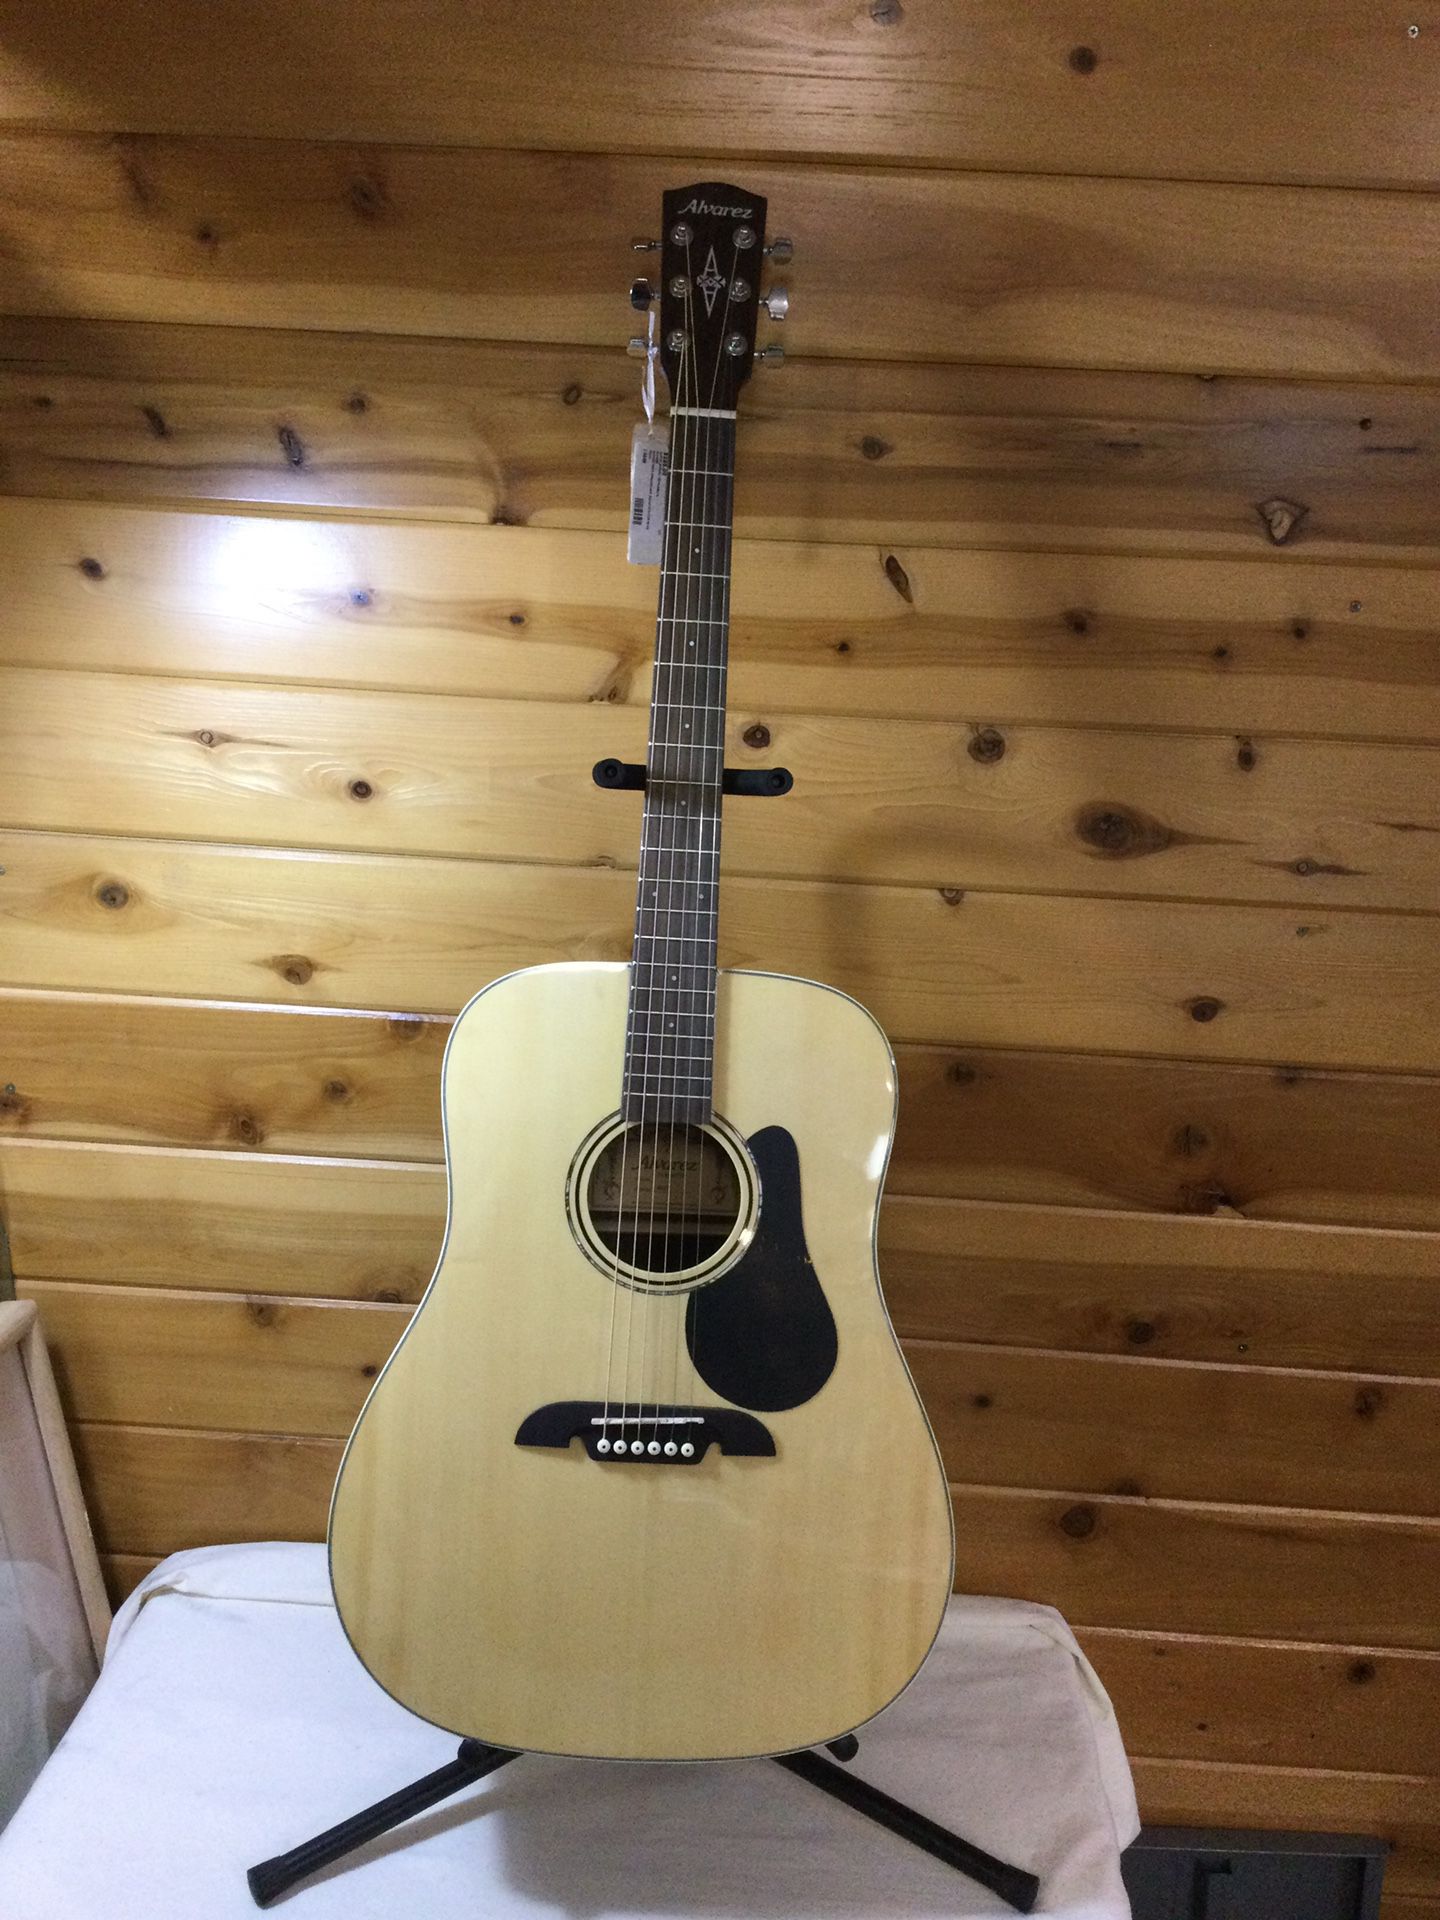 Alvarez RD27 Acoustic Guitar 